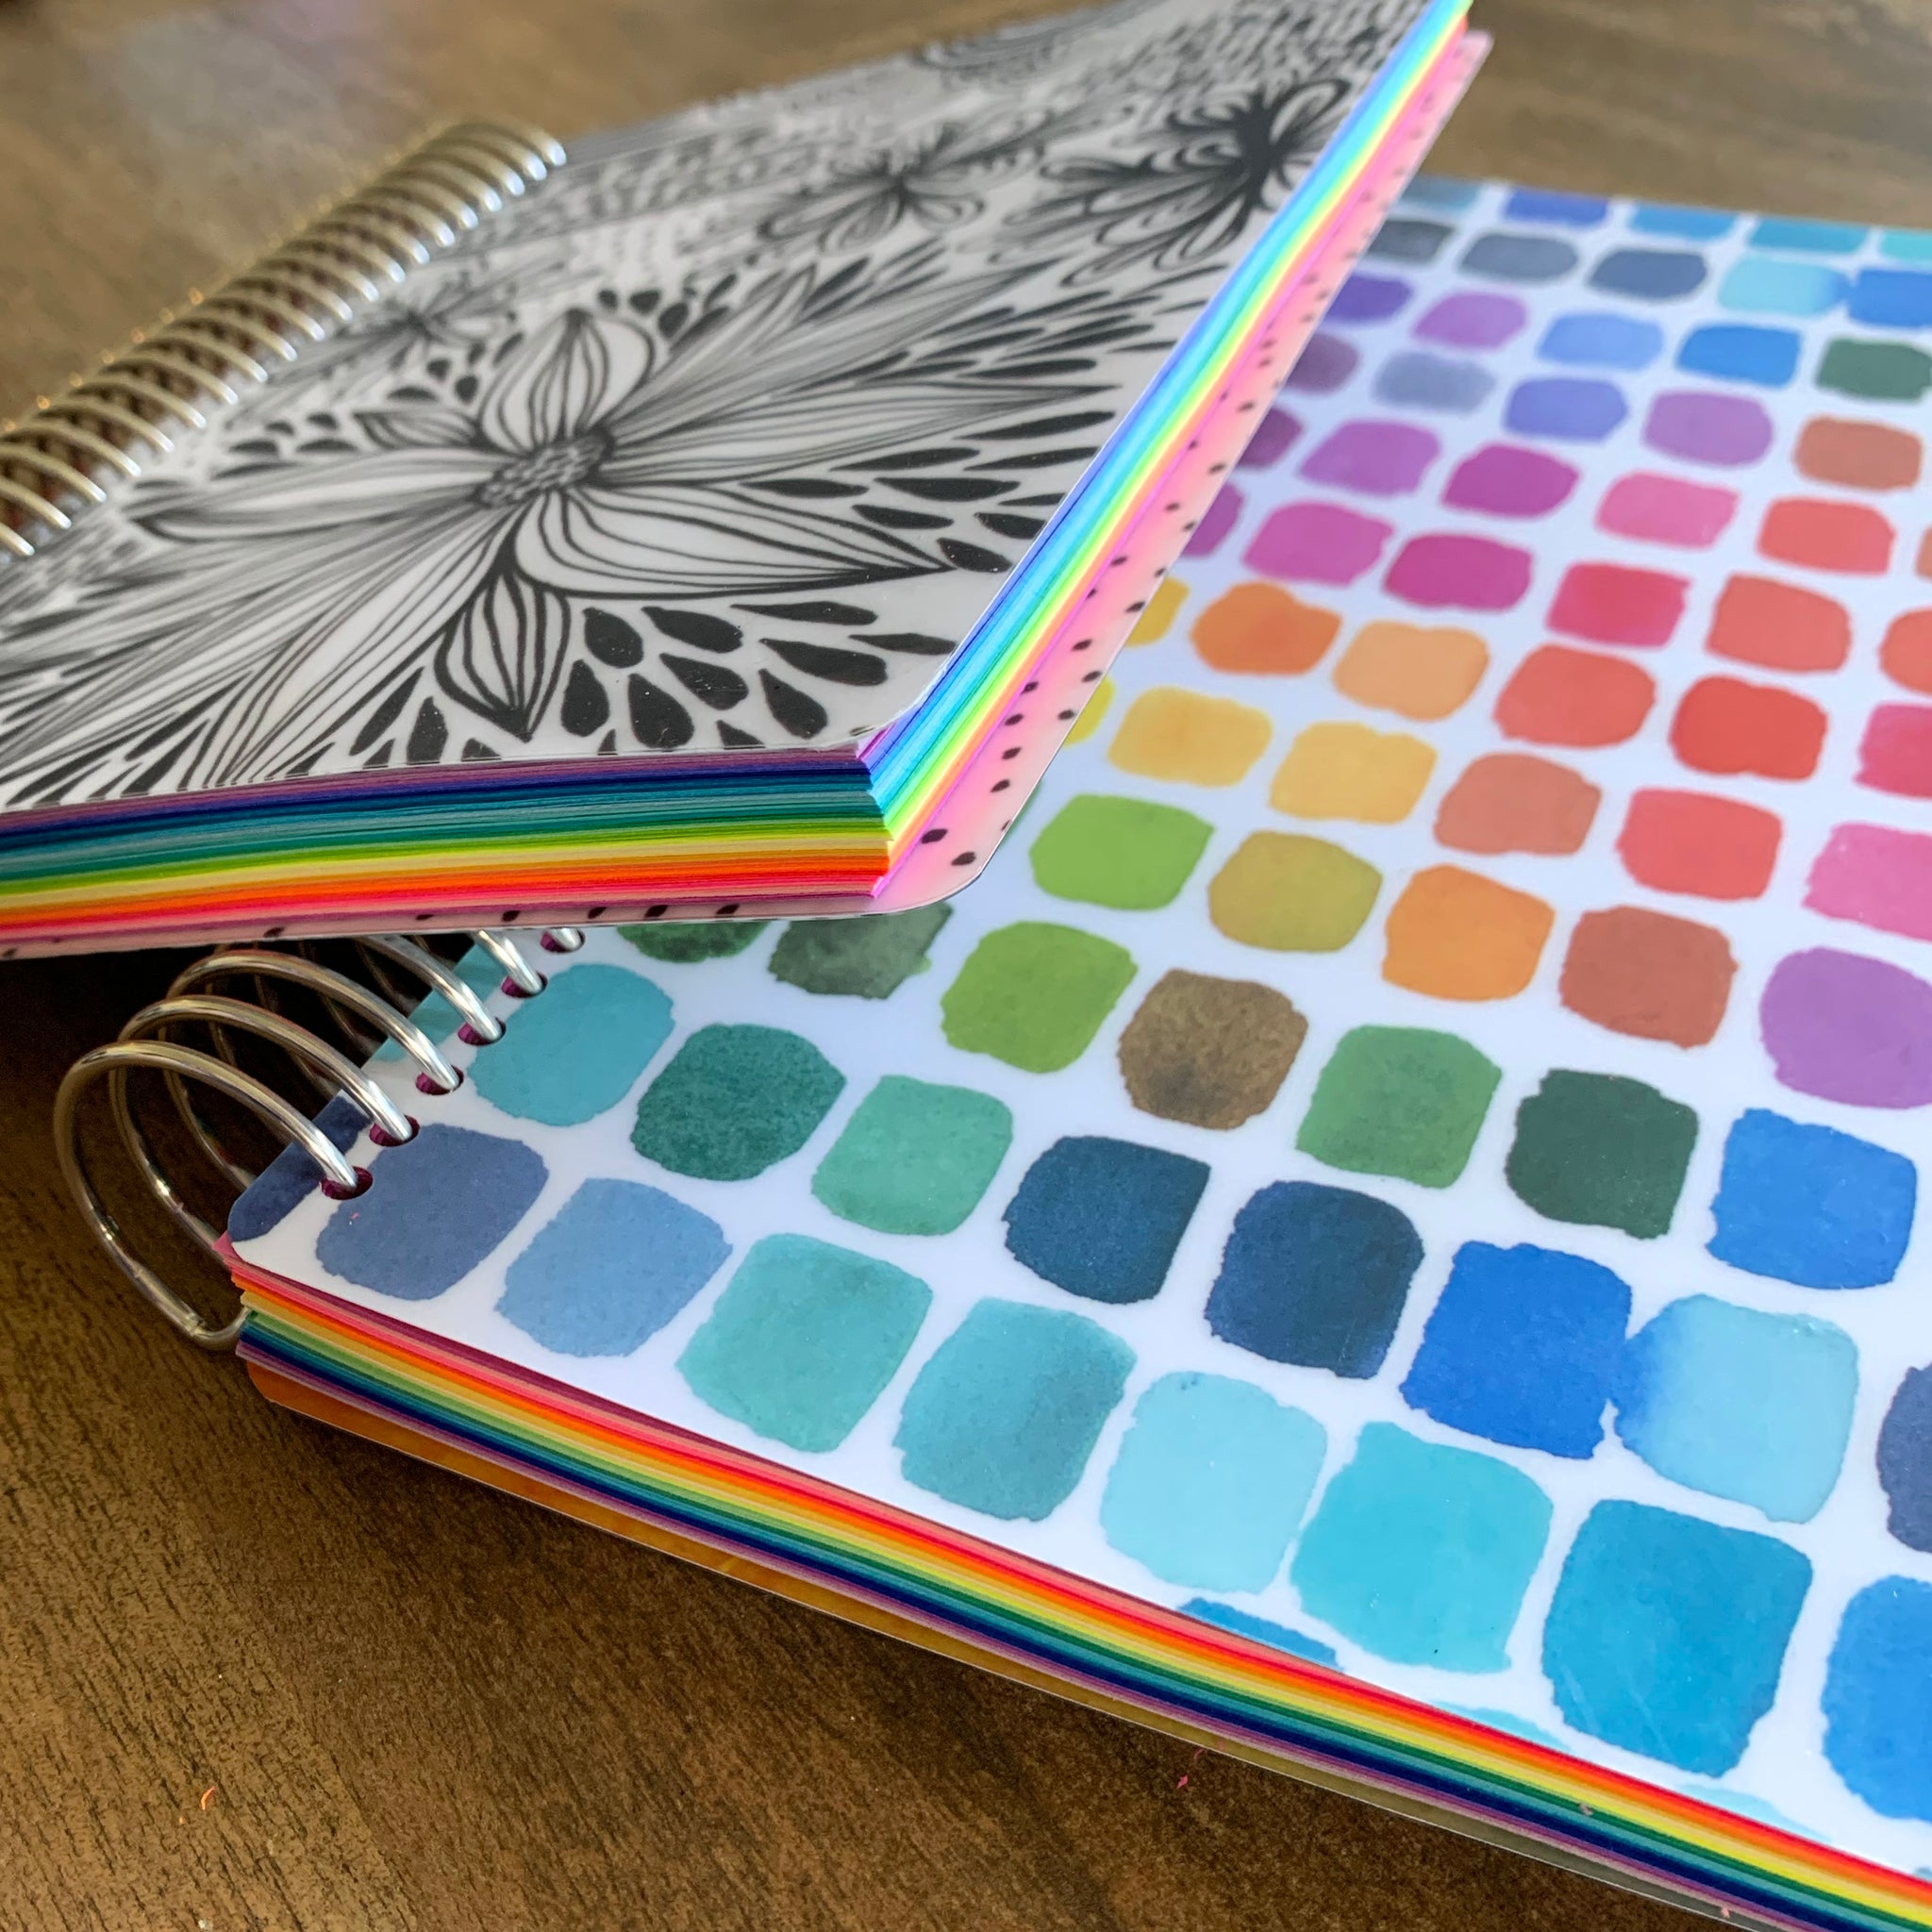 Mandala Dot Art Small Notebook/Journal